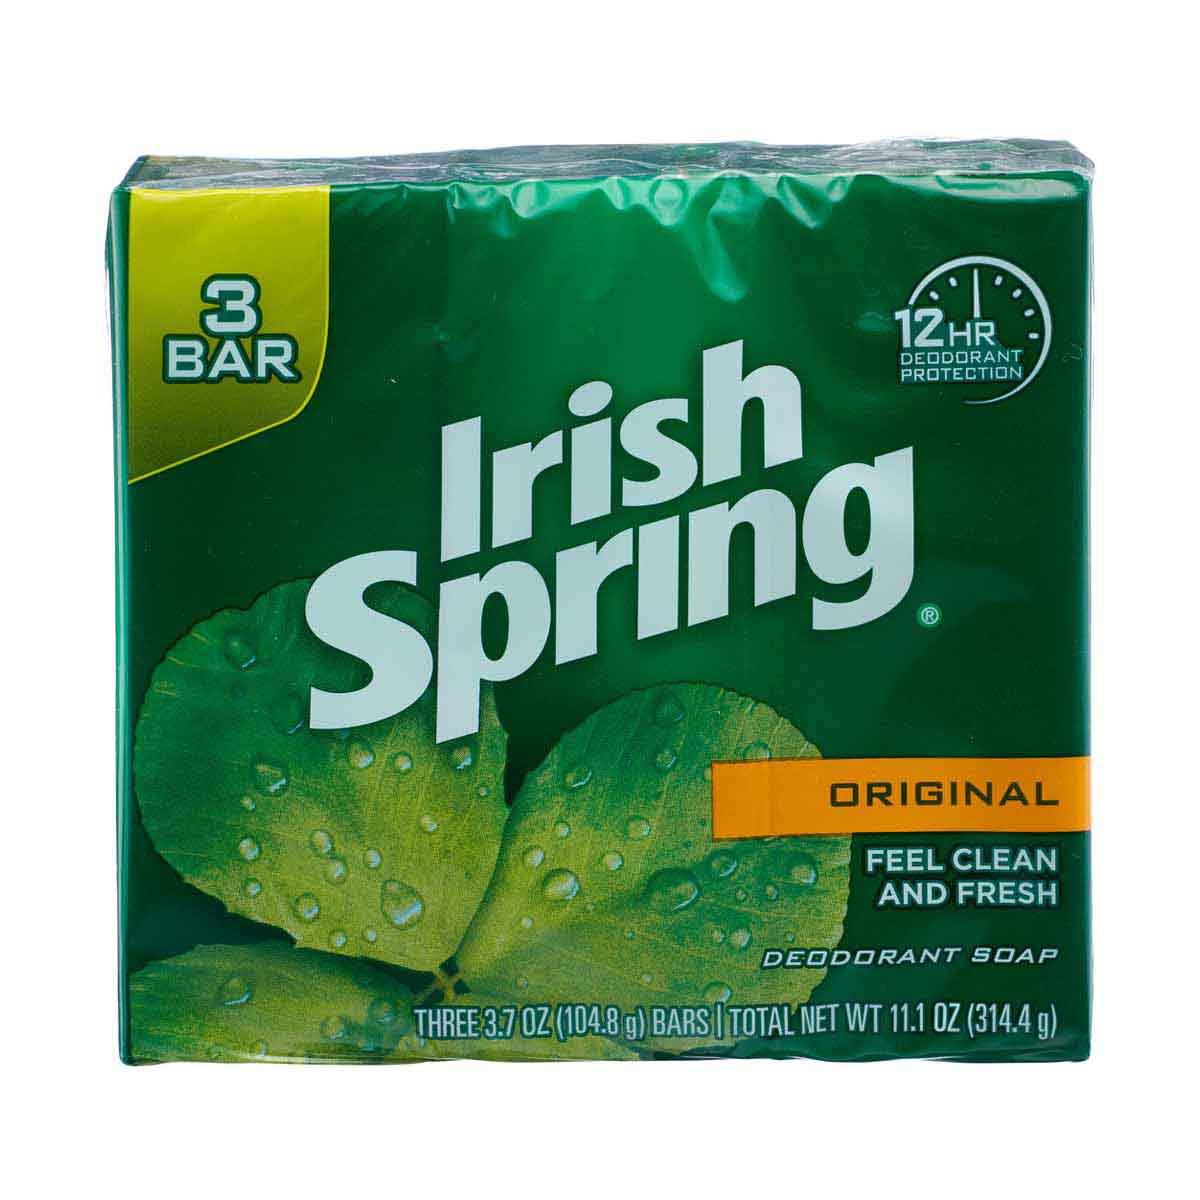 Irish Spring Original Clean Deodorant Bar Soap, Pack of 3